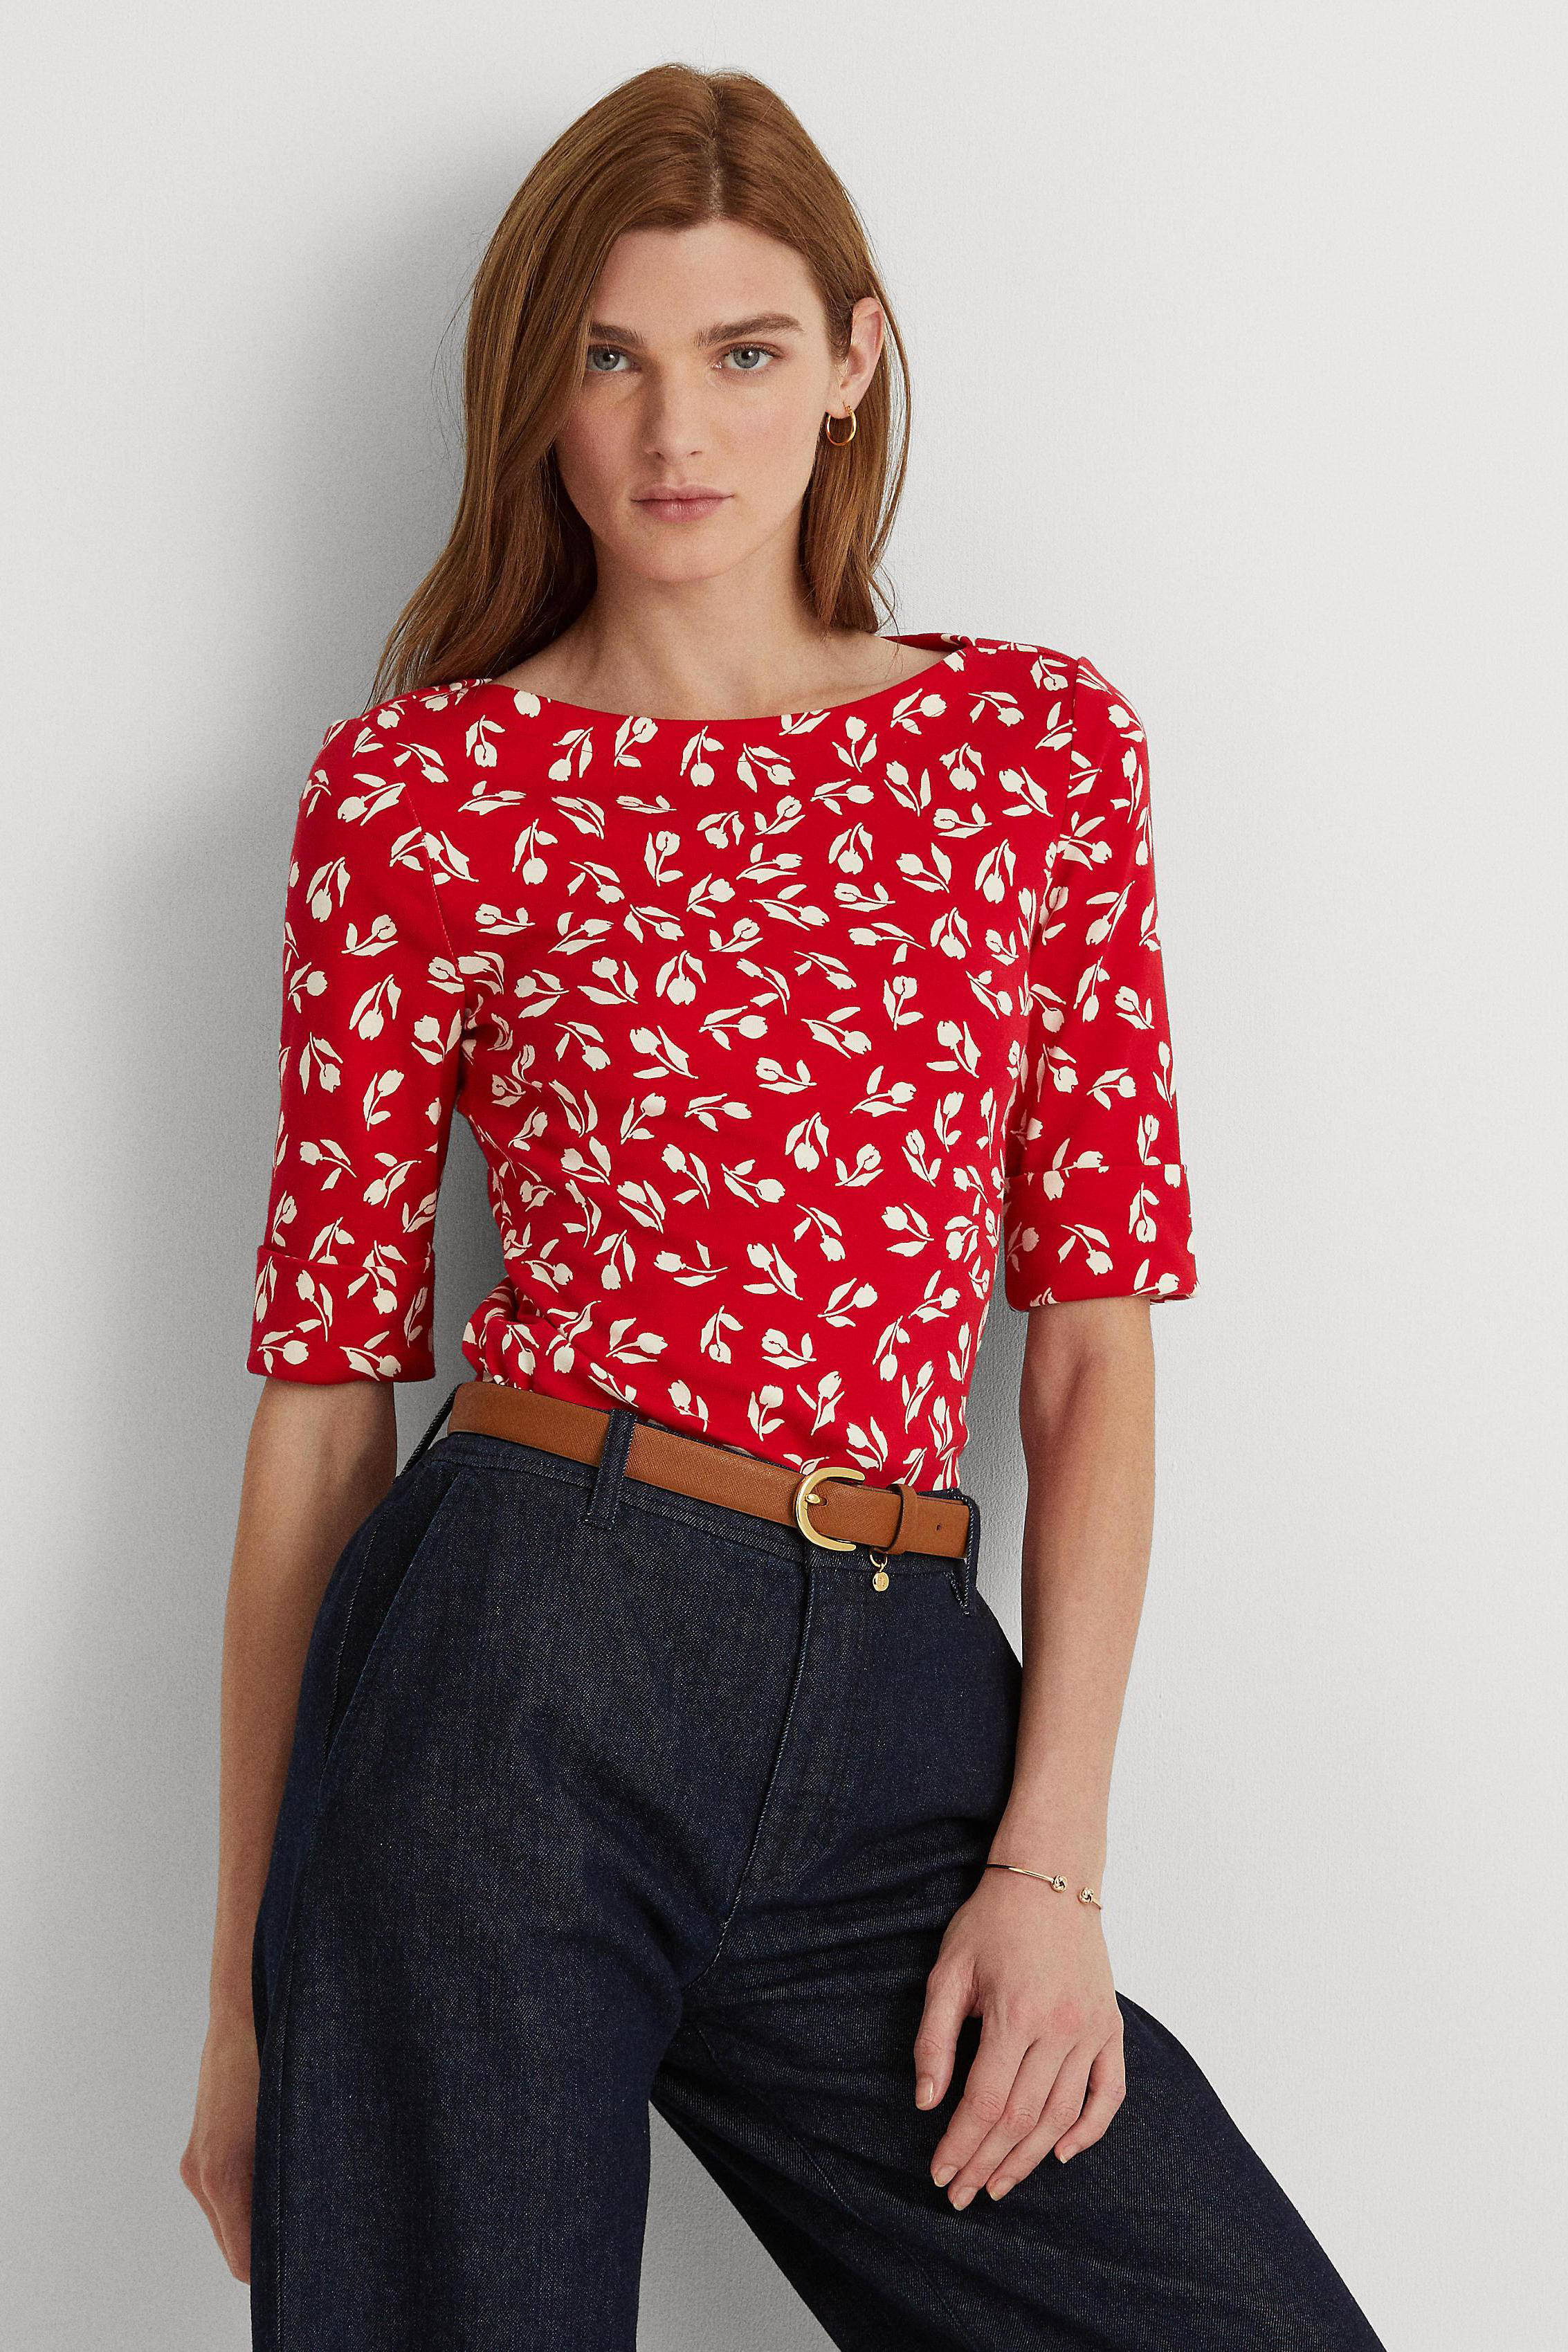 wanhoop Zelfrespect merk op Rode T Shirts Dames Sale, SAVE 32% - lutheranems.com